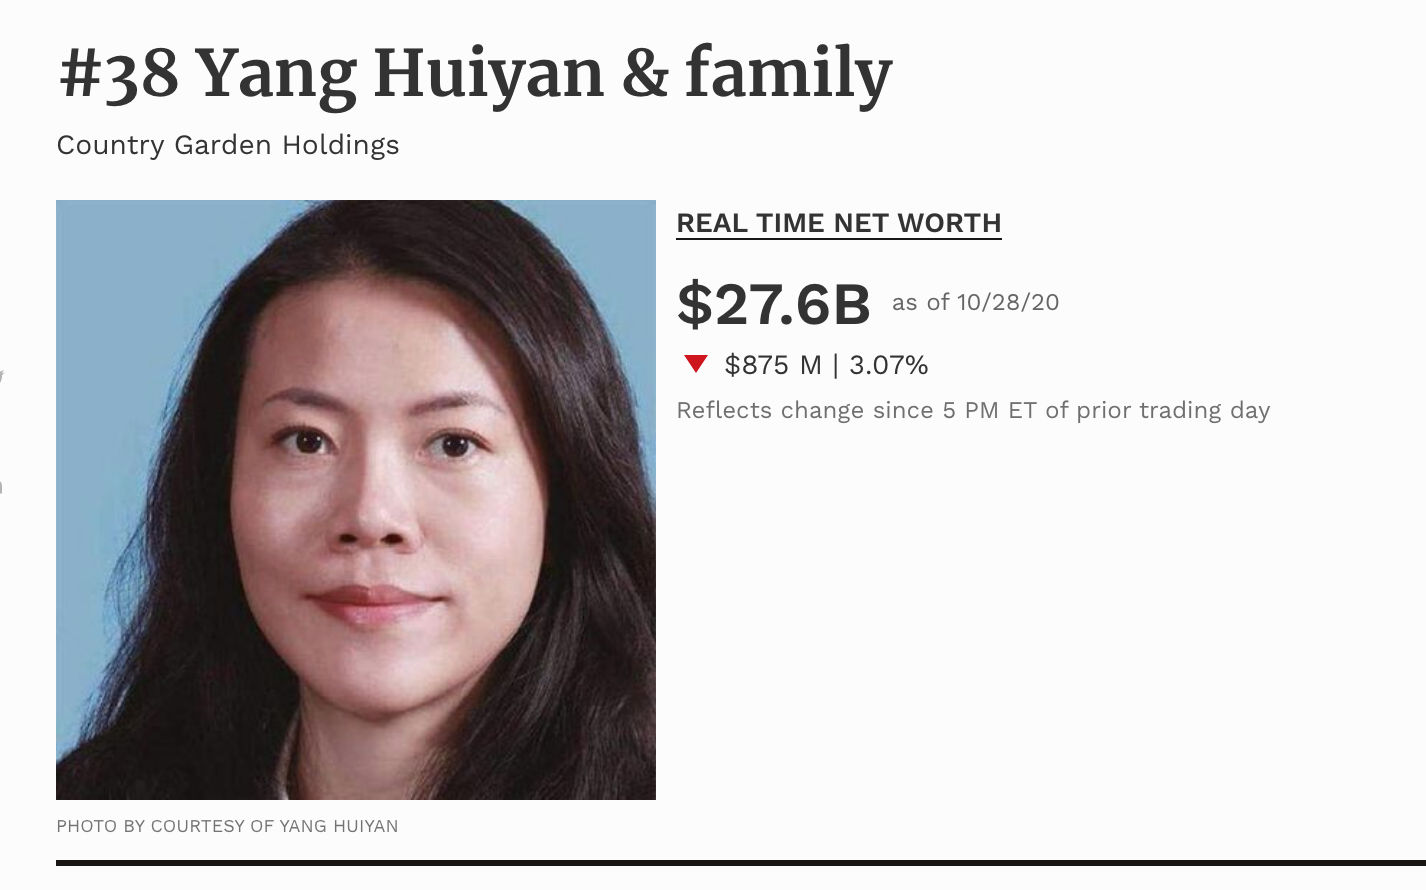 Huiyan Yang hiện đứng đầu danh sách tỷ phú trẻ giàu nhất Trung Quốc và xếp thứ